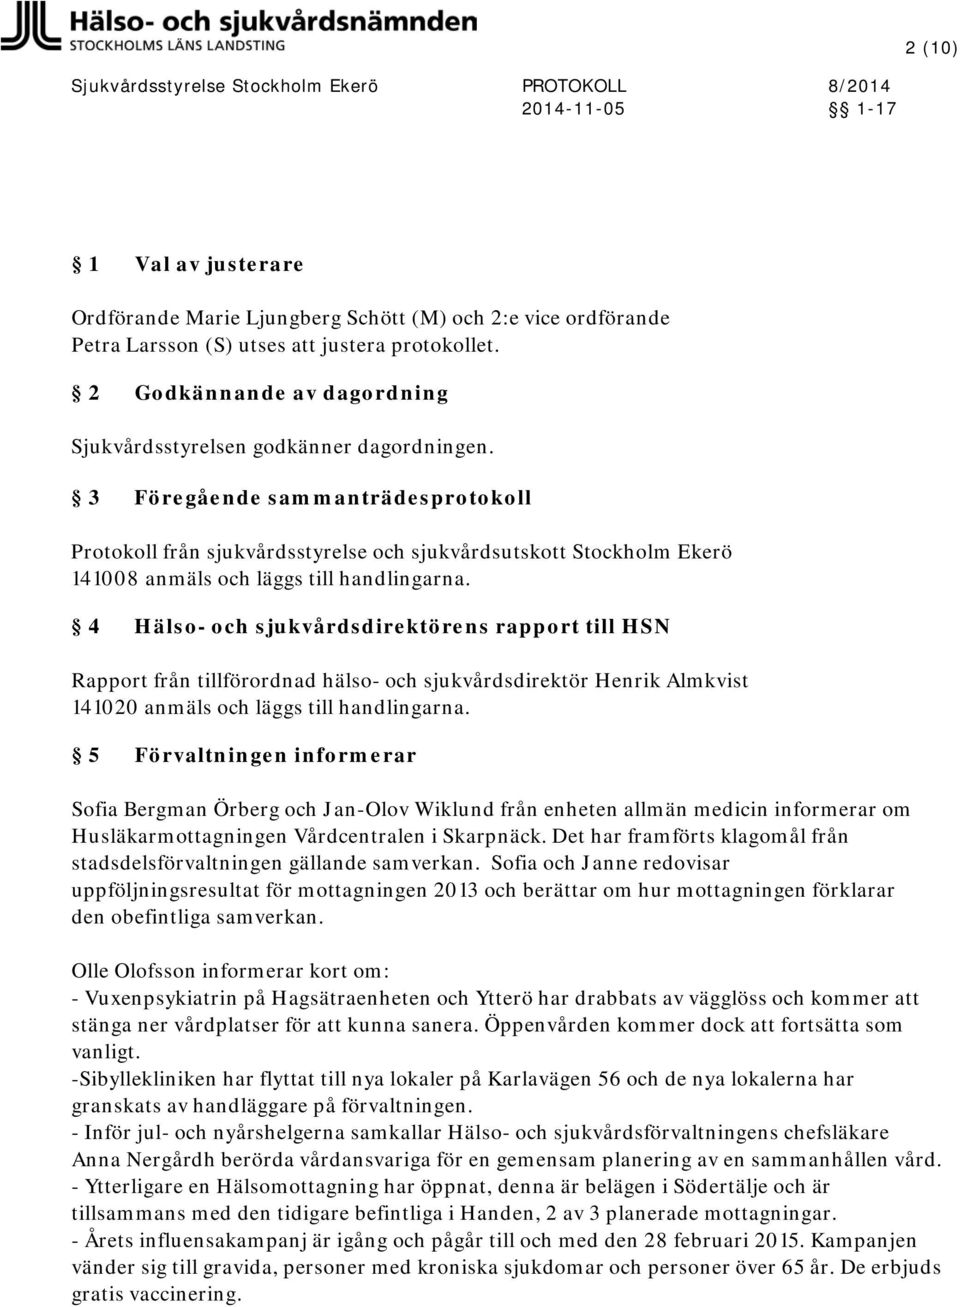 3 Föregående sammanträdesprotokoll Protokoll från sjukvårdsstyrelse och sjukvårdsutskott Stockholm Ekerö 141008 anmäls och läggs till handlingarna.